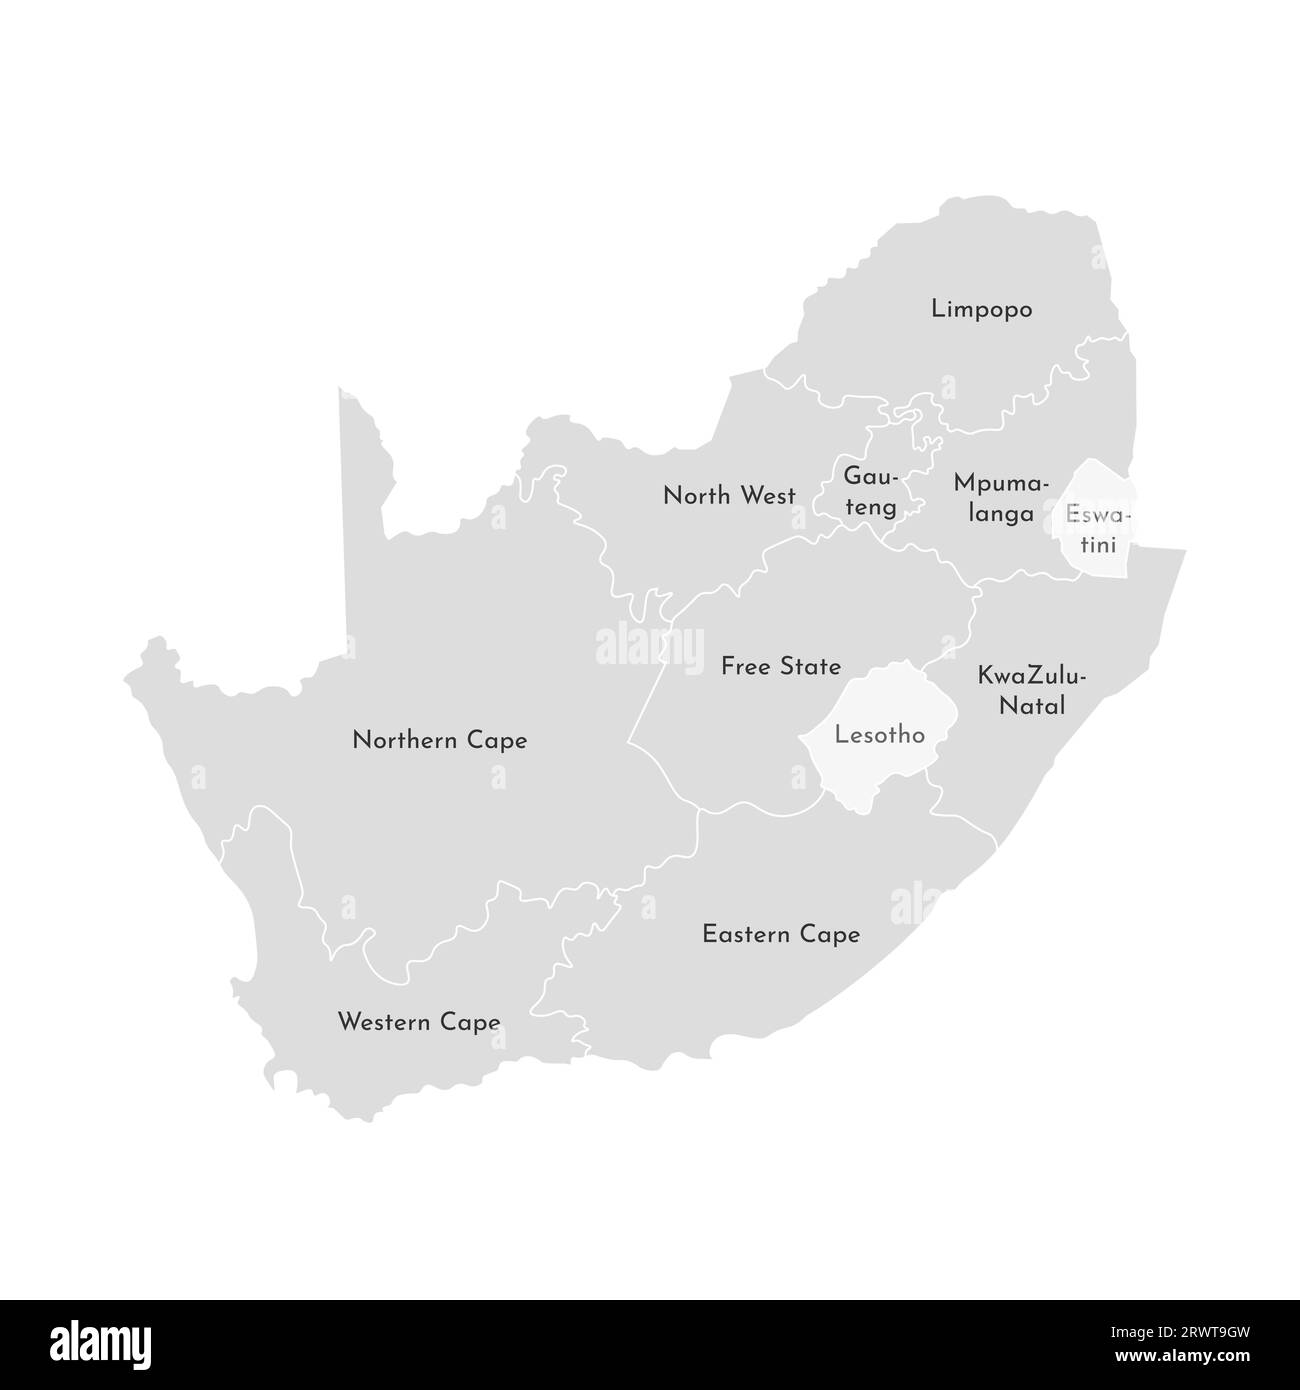 Illustrazione vettoriale isolata della mappa amministrativa semplificata del Sudafrica. Confini e nomi delle province (regioni). Silhouette grigie. Bianco o Illustrazione Vettoriale